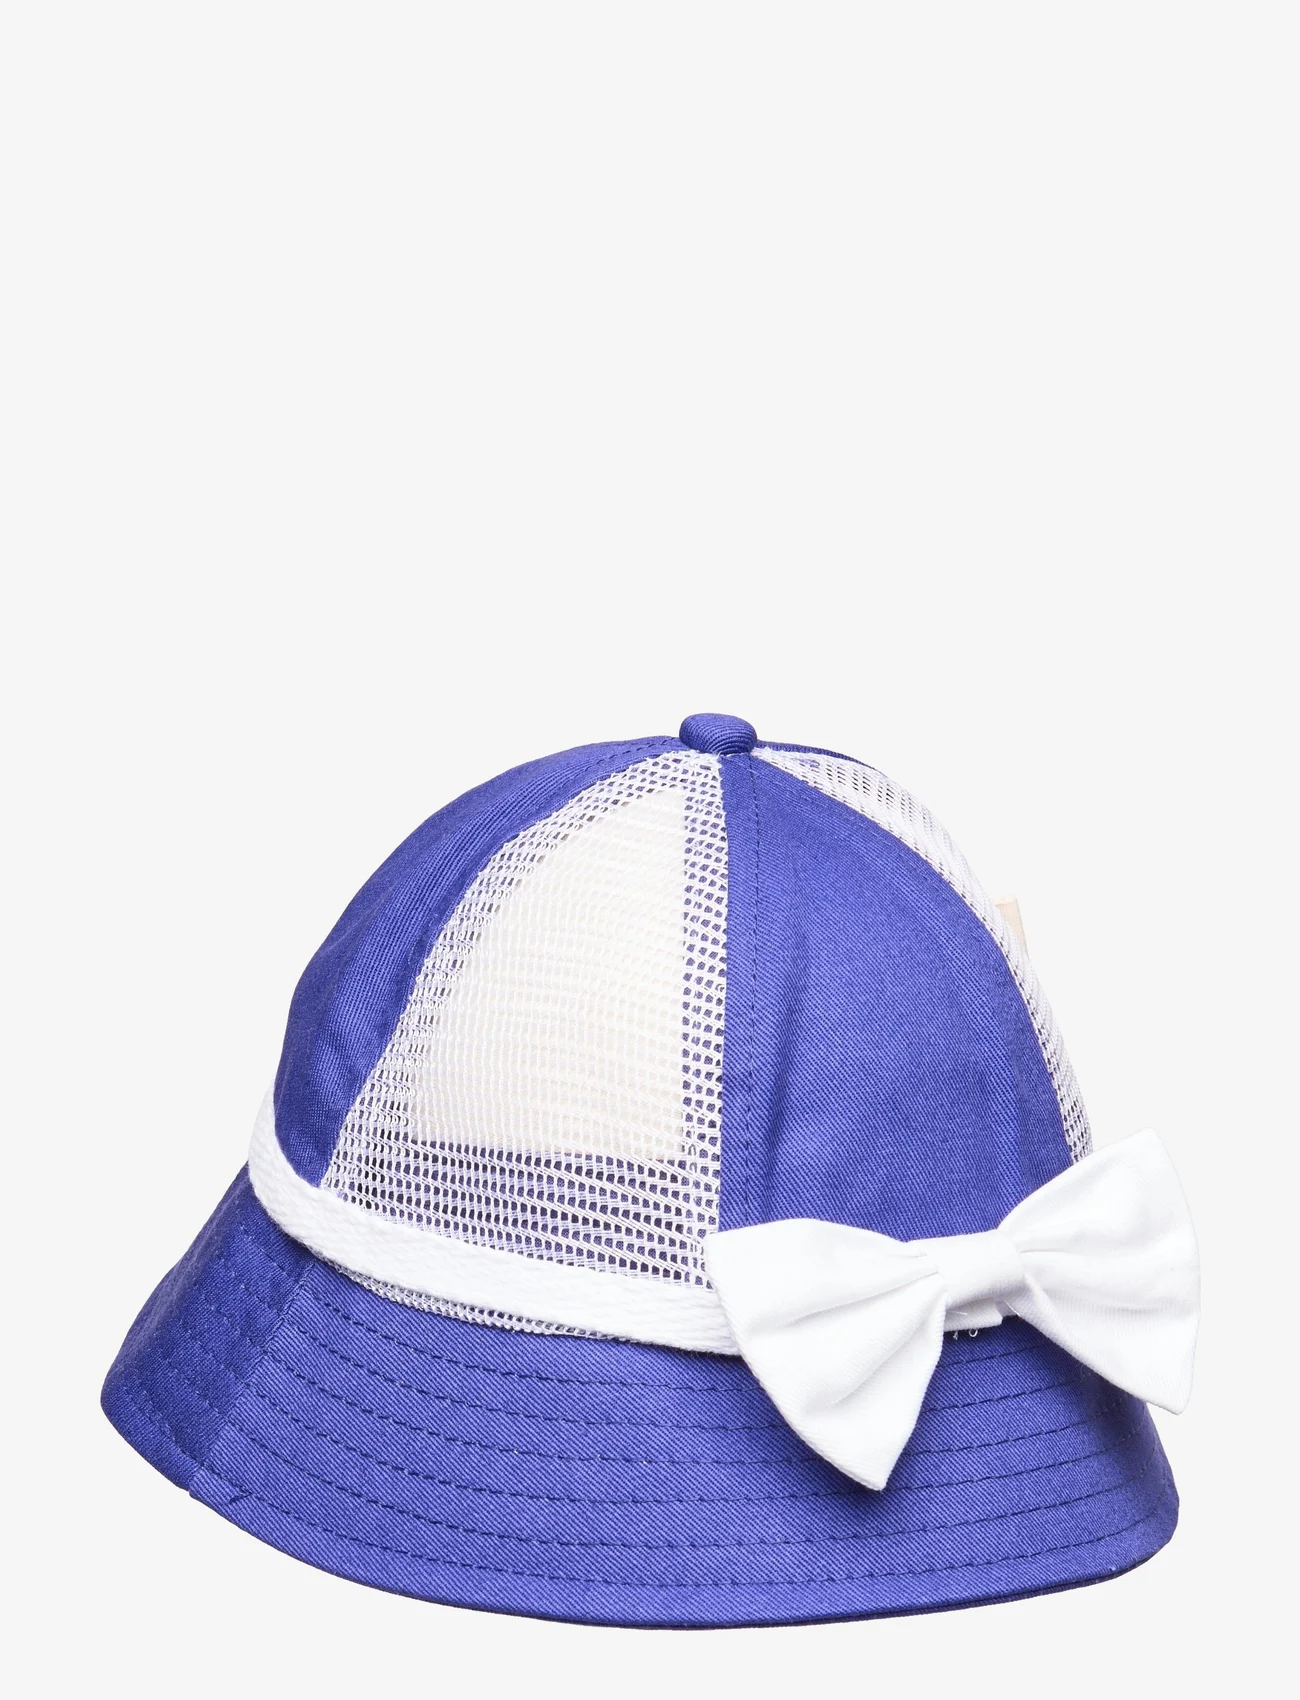 Mini Rodini - Bow mesh sun hat - kapelusz przeciwsłoneczny - blue - 1